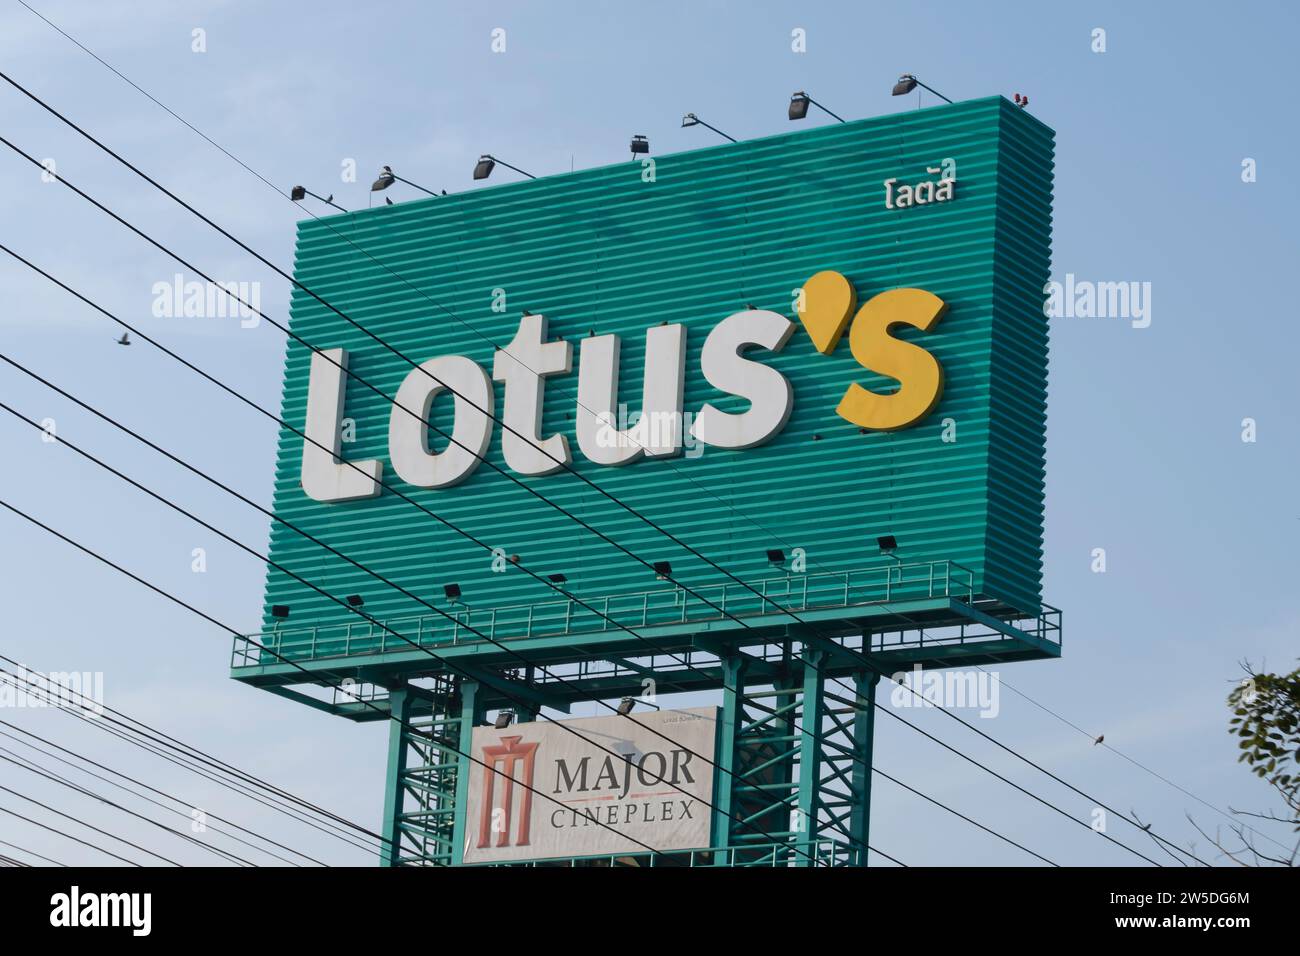 panneau d'affichage à phetchabun, thaïlande, avec une apostrophe inhabituellement utilisée, marquant l'emplacement d'un lotus, anciennement tesco lotus, centre commercial Banque D'Images